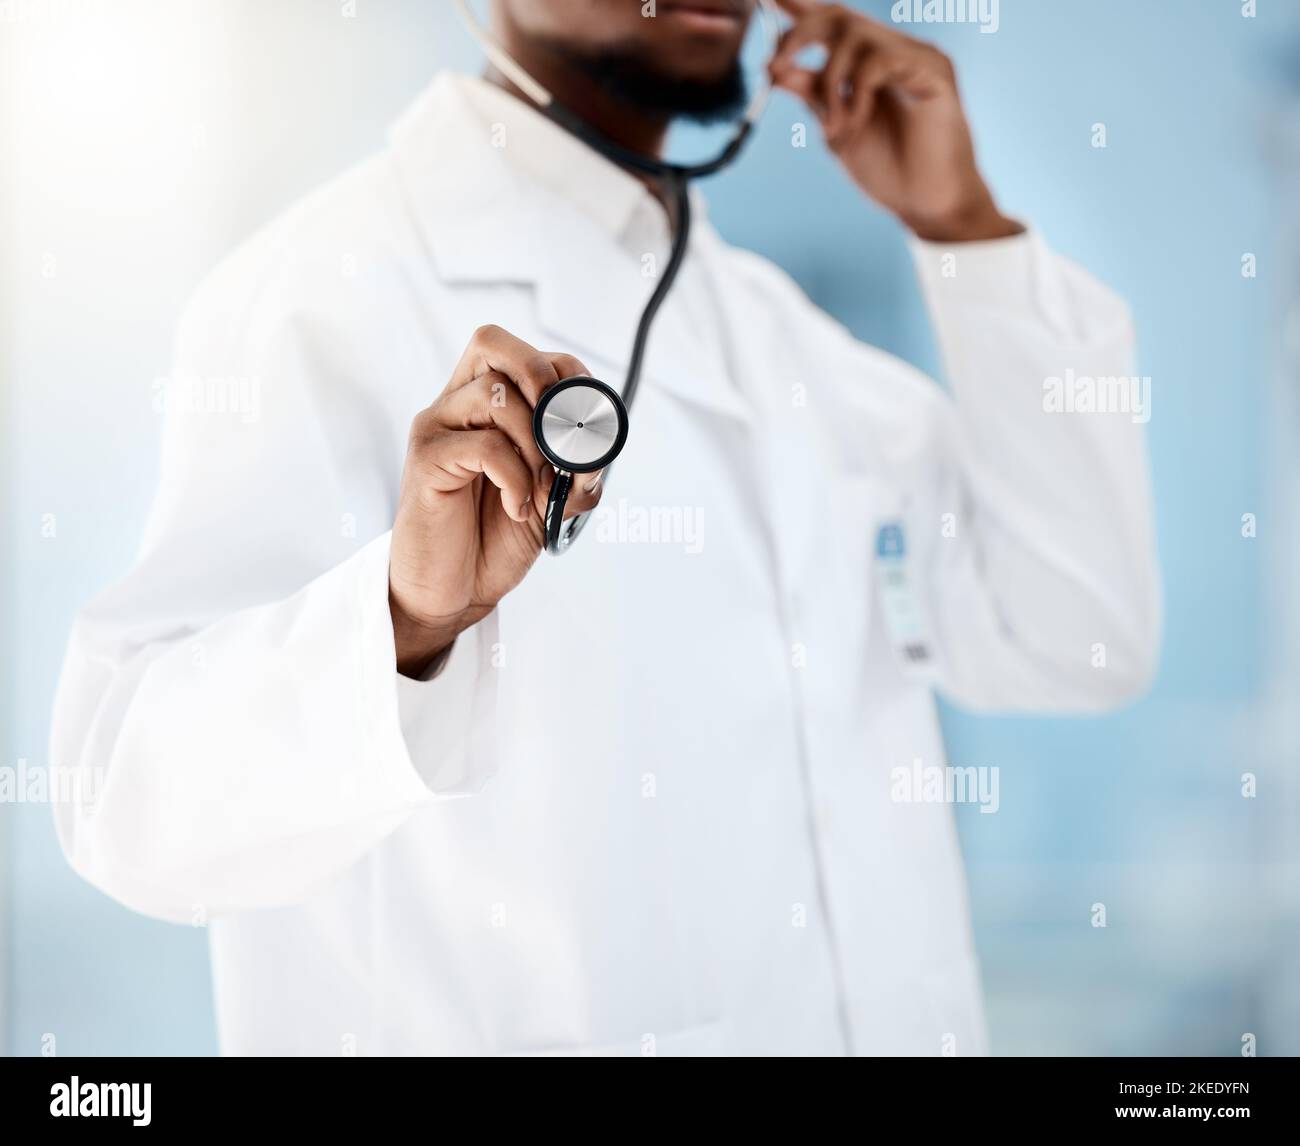 Arzt, Kardiologe und Stethoskop für die medizinische Versorgung, Untersuchung auf Gesundheit und Wellness in einem Krankenhaus. Hand eines schwarzen Mannes, der zuhört Stockfoto